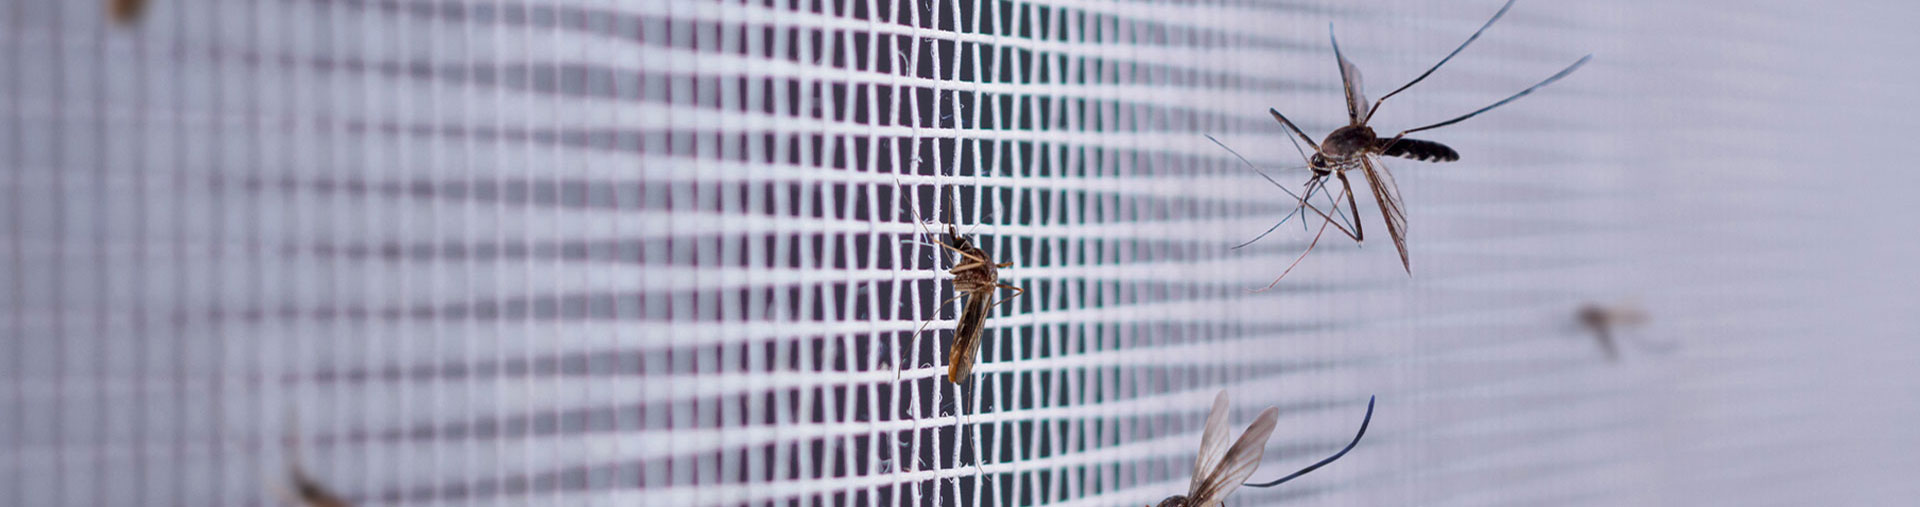 Zanzare sulla zanzariera della finestra